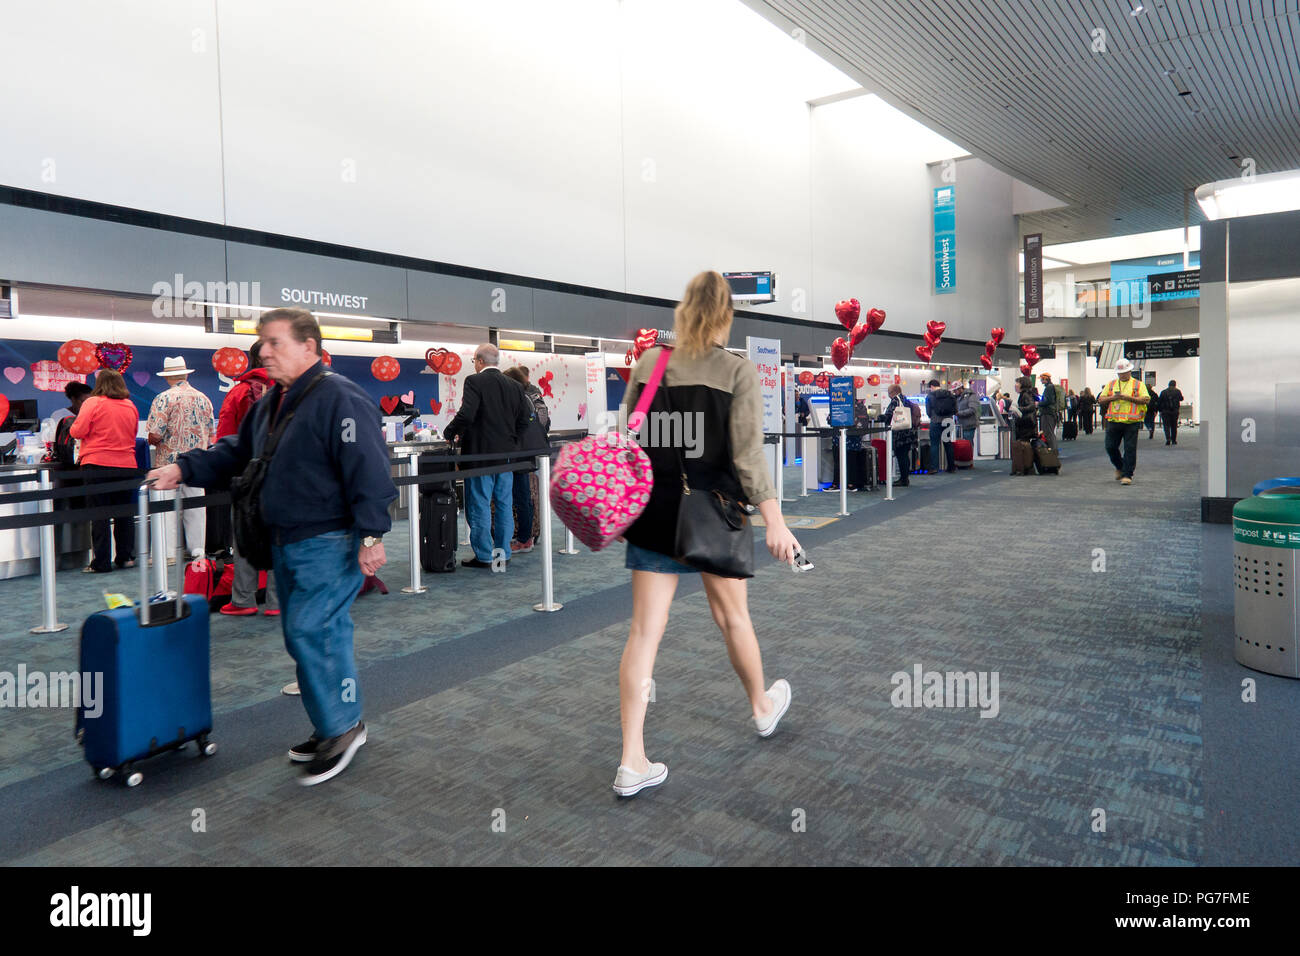 Southwest Airlines Check-in Schalter am Flughafen San Francisco International - San Francisco, Kalifornien, USA Stockfoto